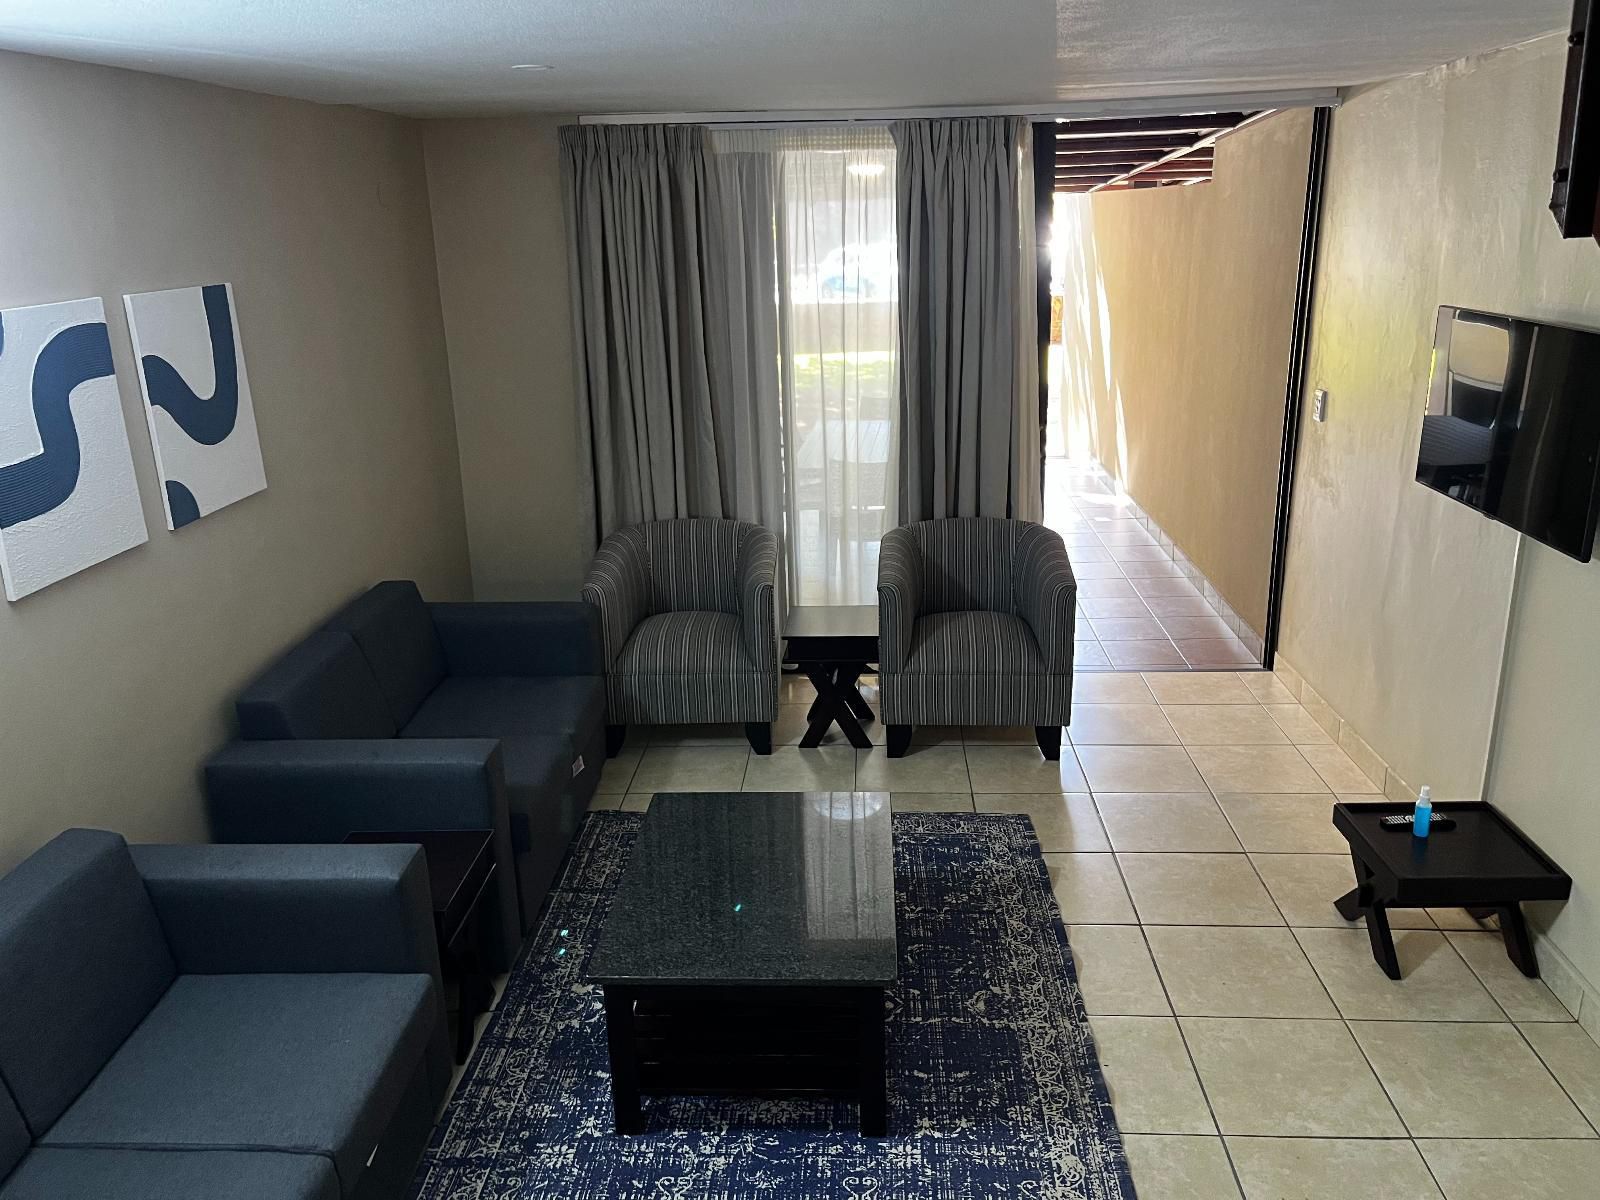 Atkv Klein Kariba Bela Bela Warmbaths Limpopo Province South Africa Living Room